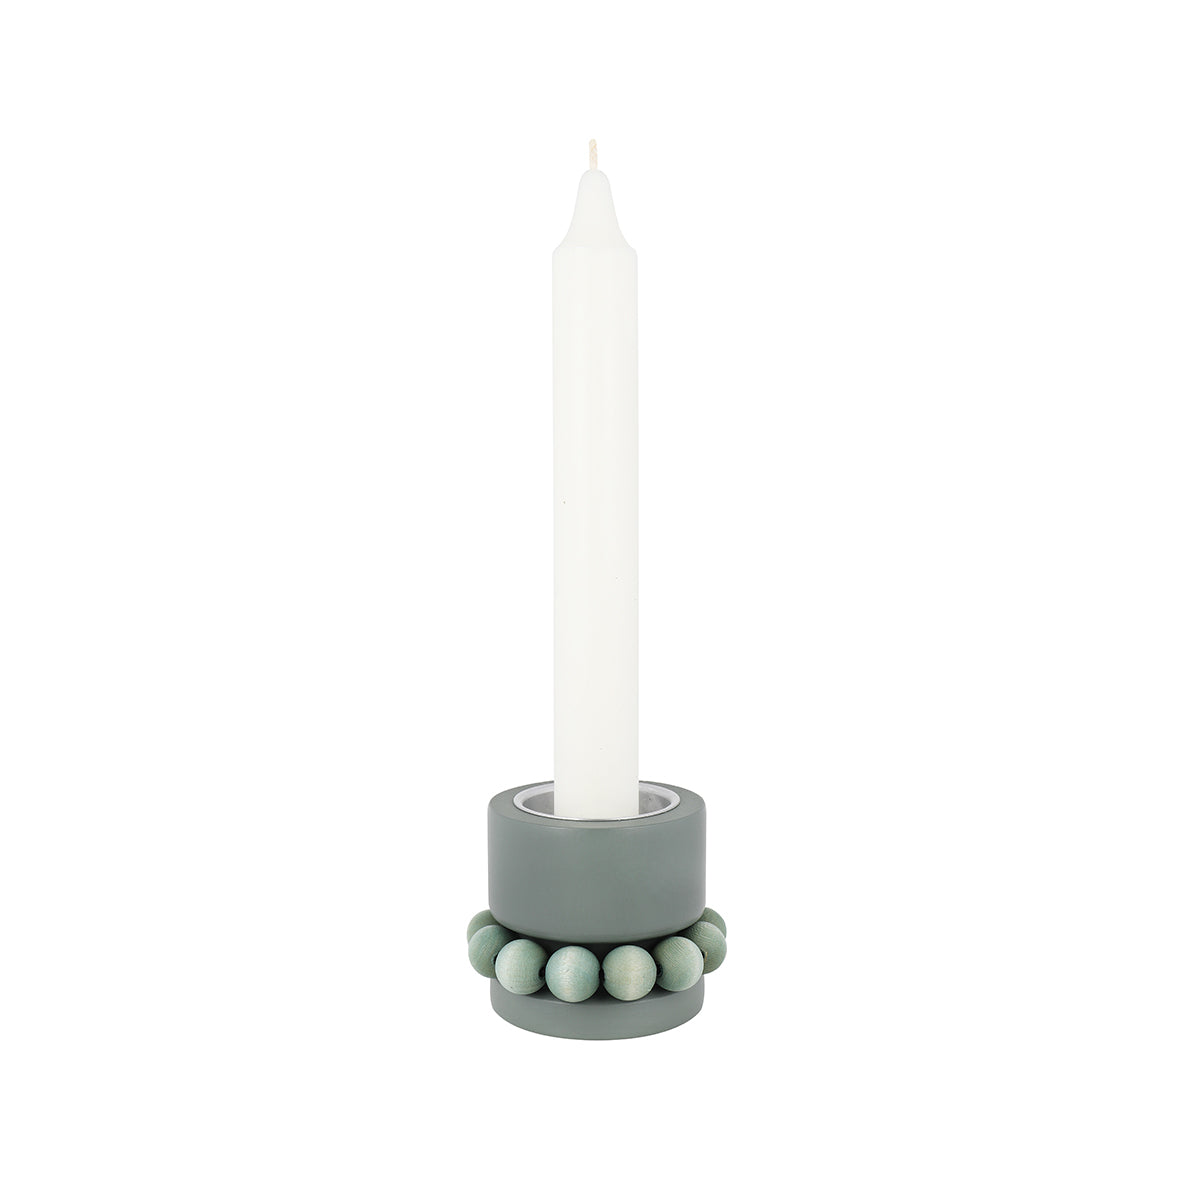 Prinsessa candleholder, green